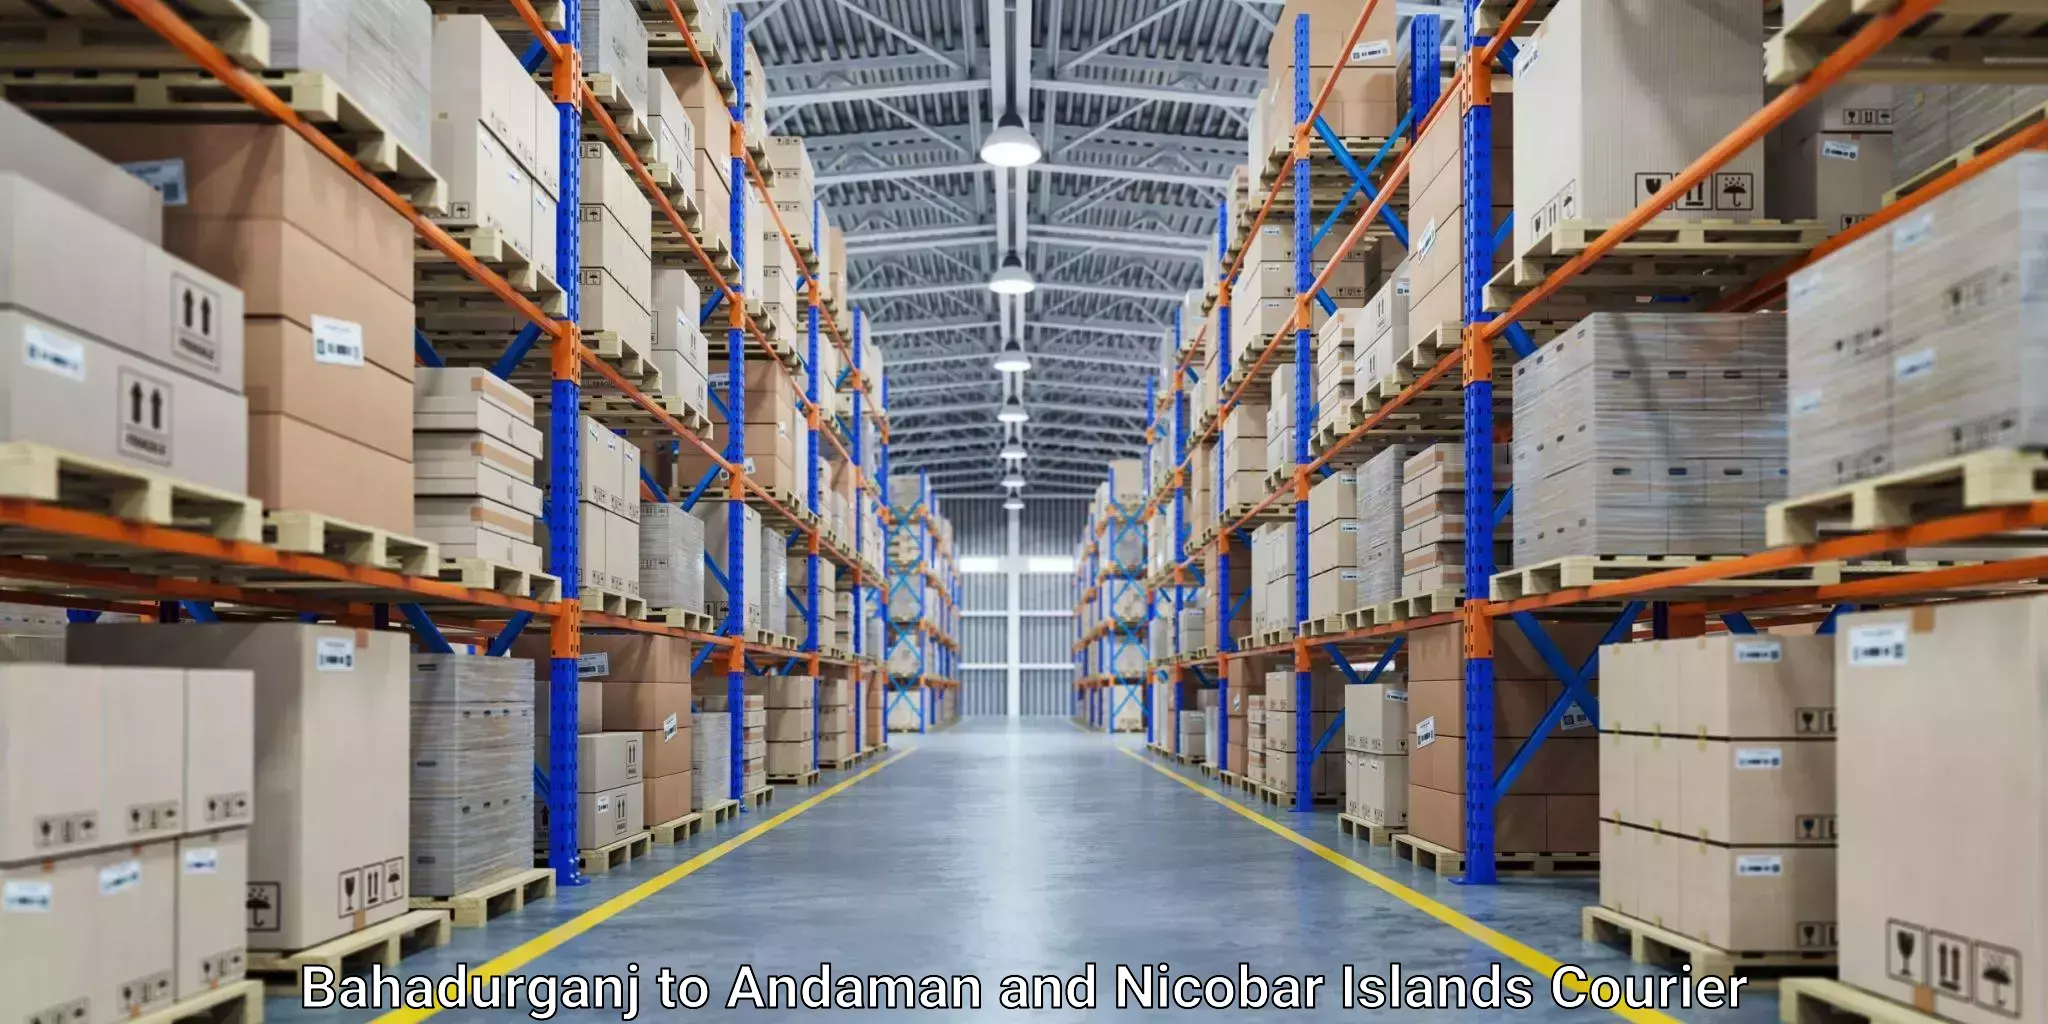 High-performance logistics Bahadurganj to South Andaman